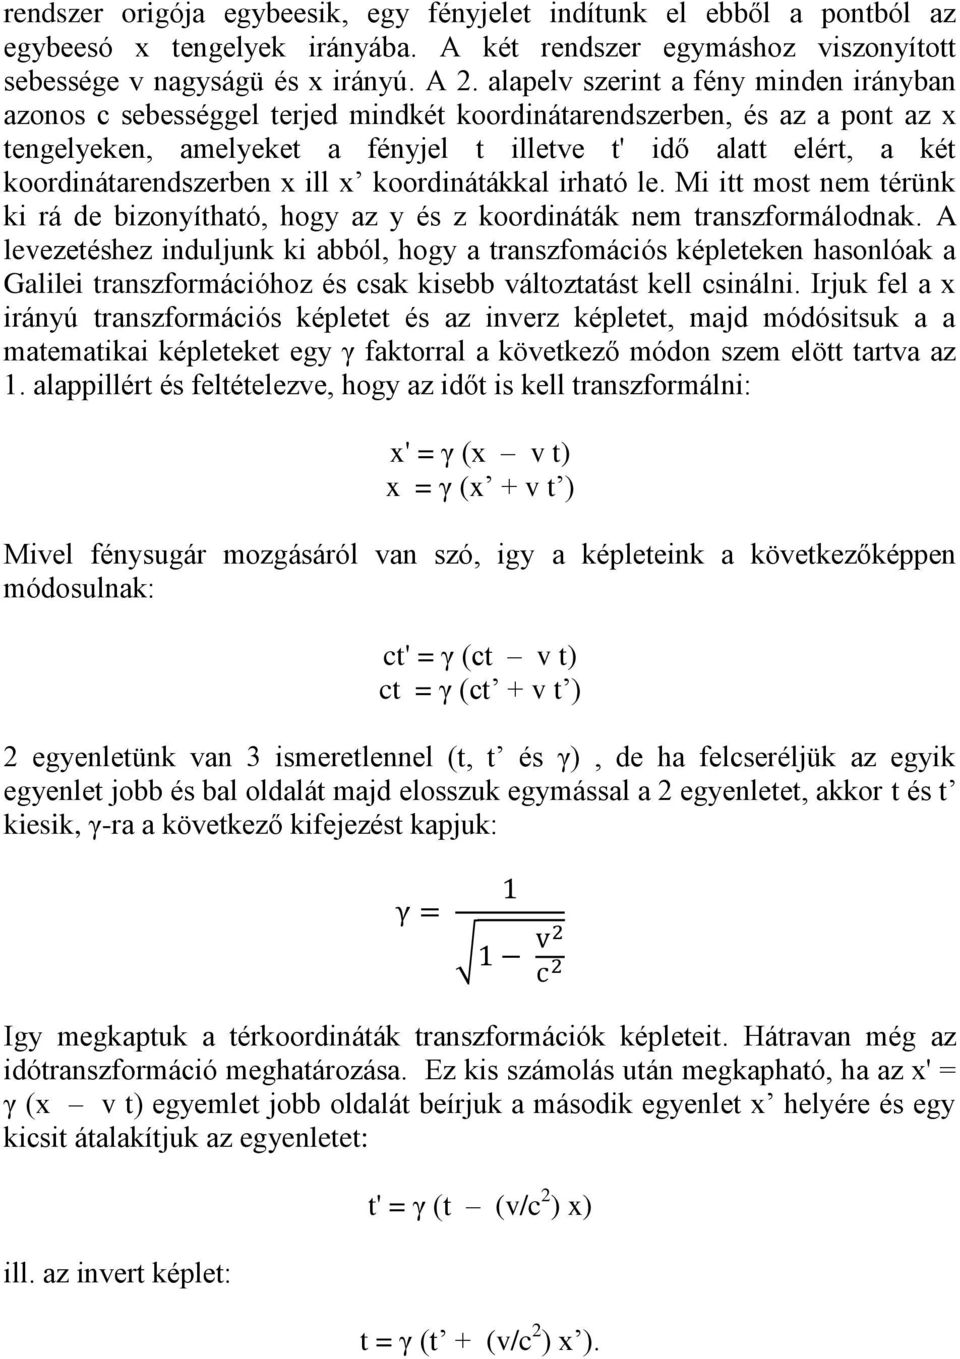 Speciális relativitáselmélet pdf